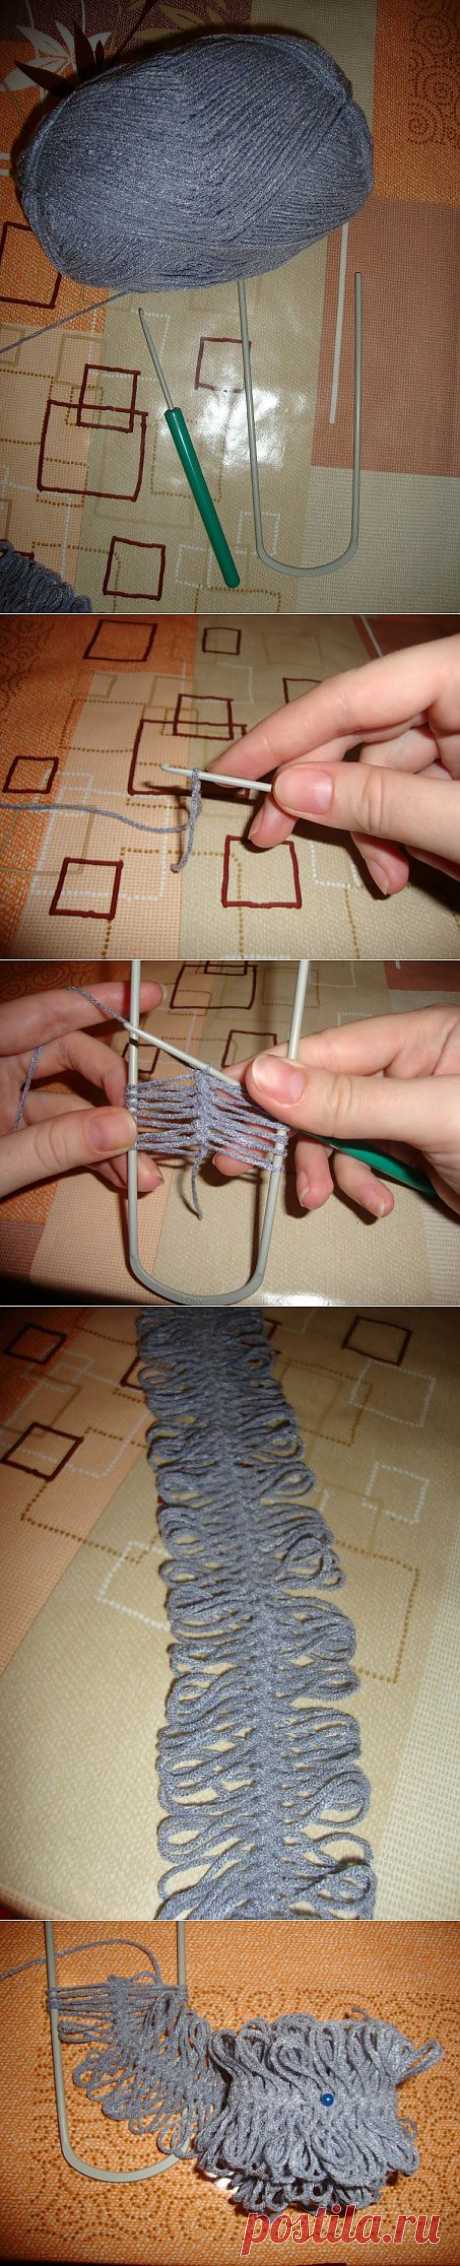 Урок №1 - для начинающих вязать на вилке - Ярмарка Мастеров - ручная работа, handmade